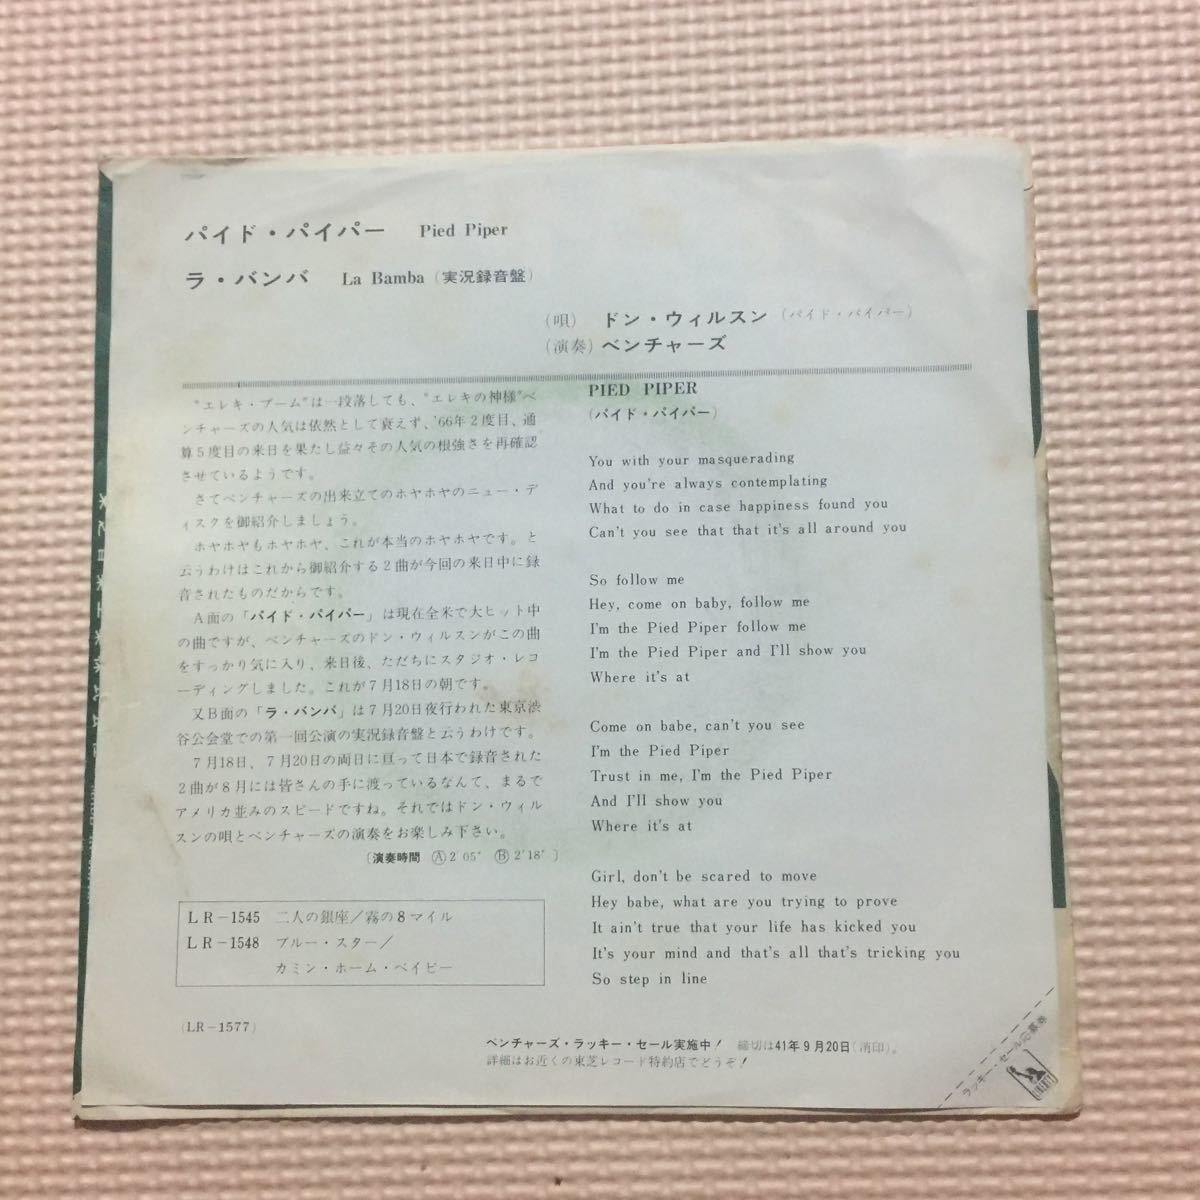 ザ ・ベンチャーズ パイド・パイパー 国内盤7インチシングルレコード【赤盤】